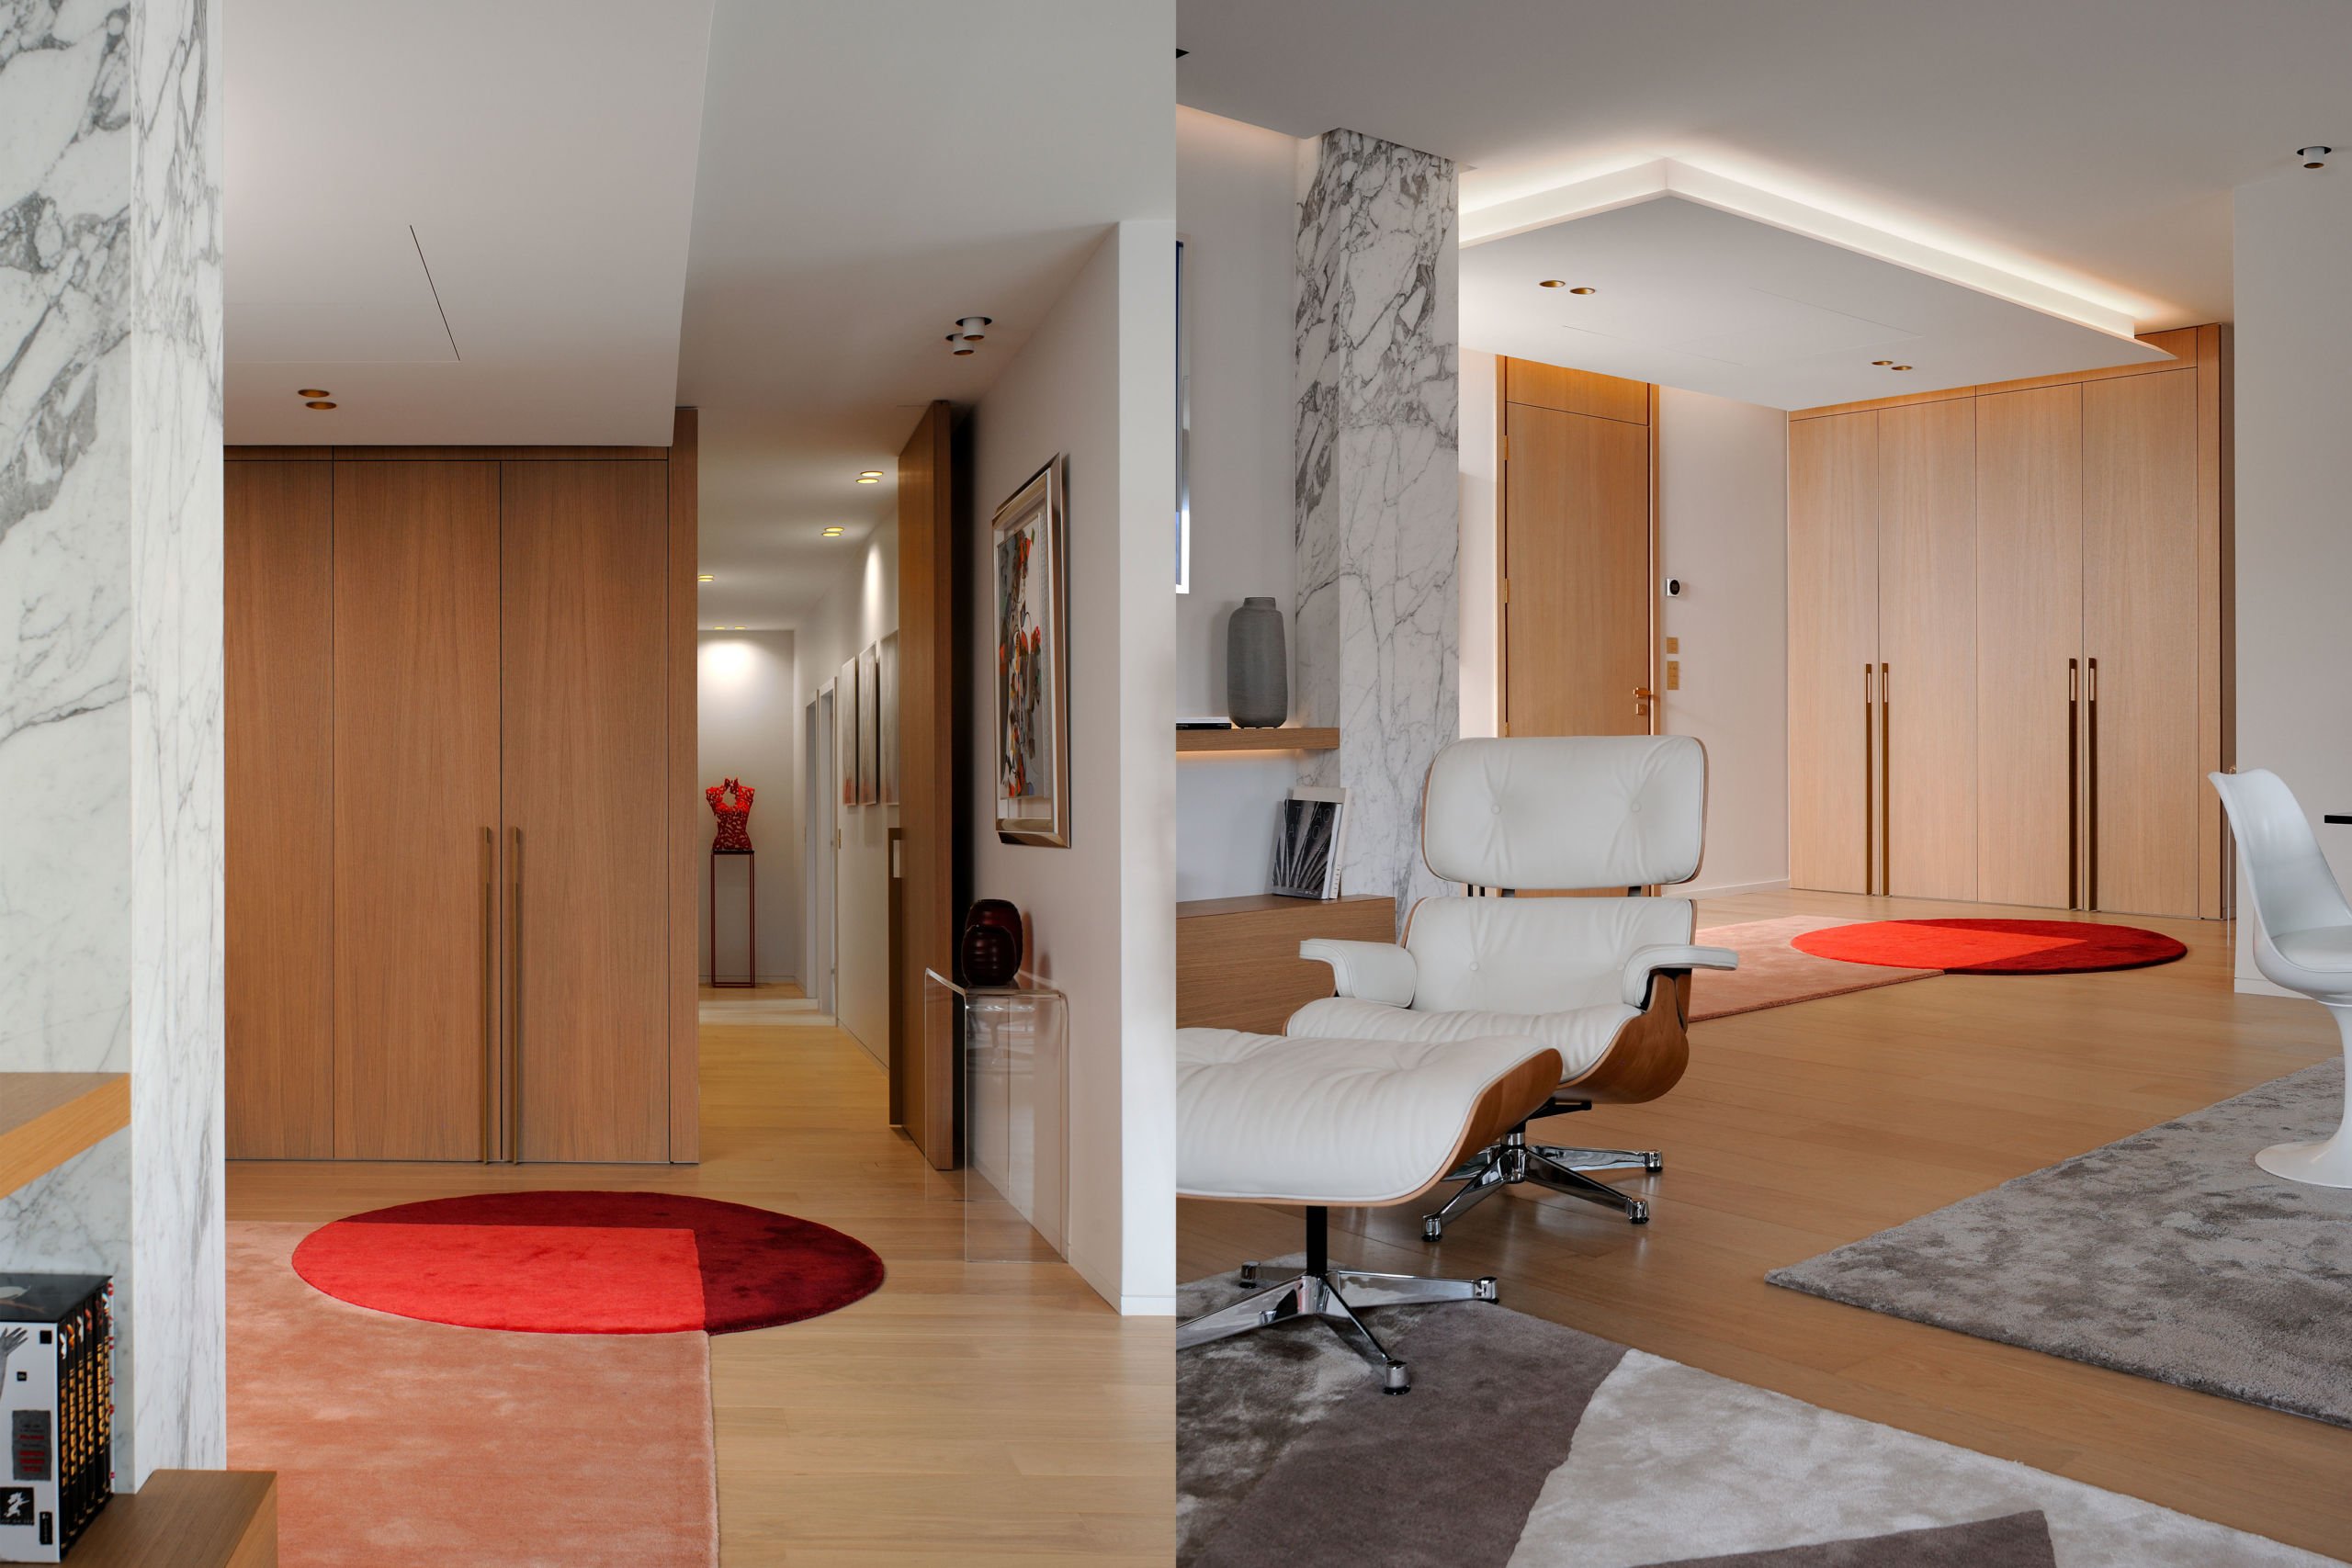 Appartement Rhône / Lyon / 160 m²